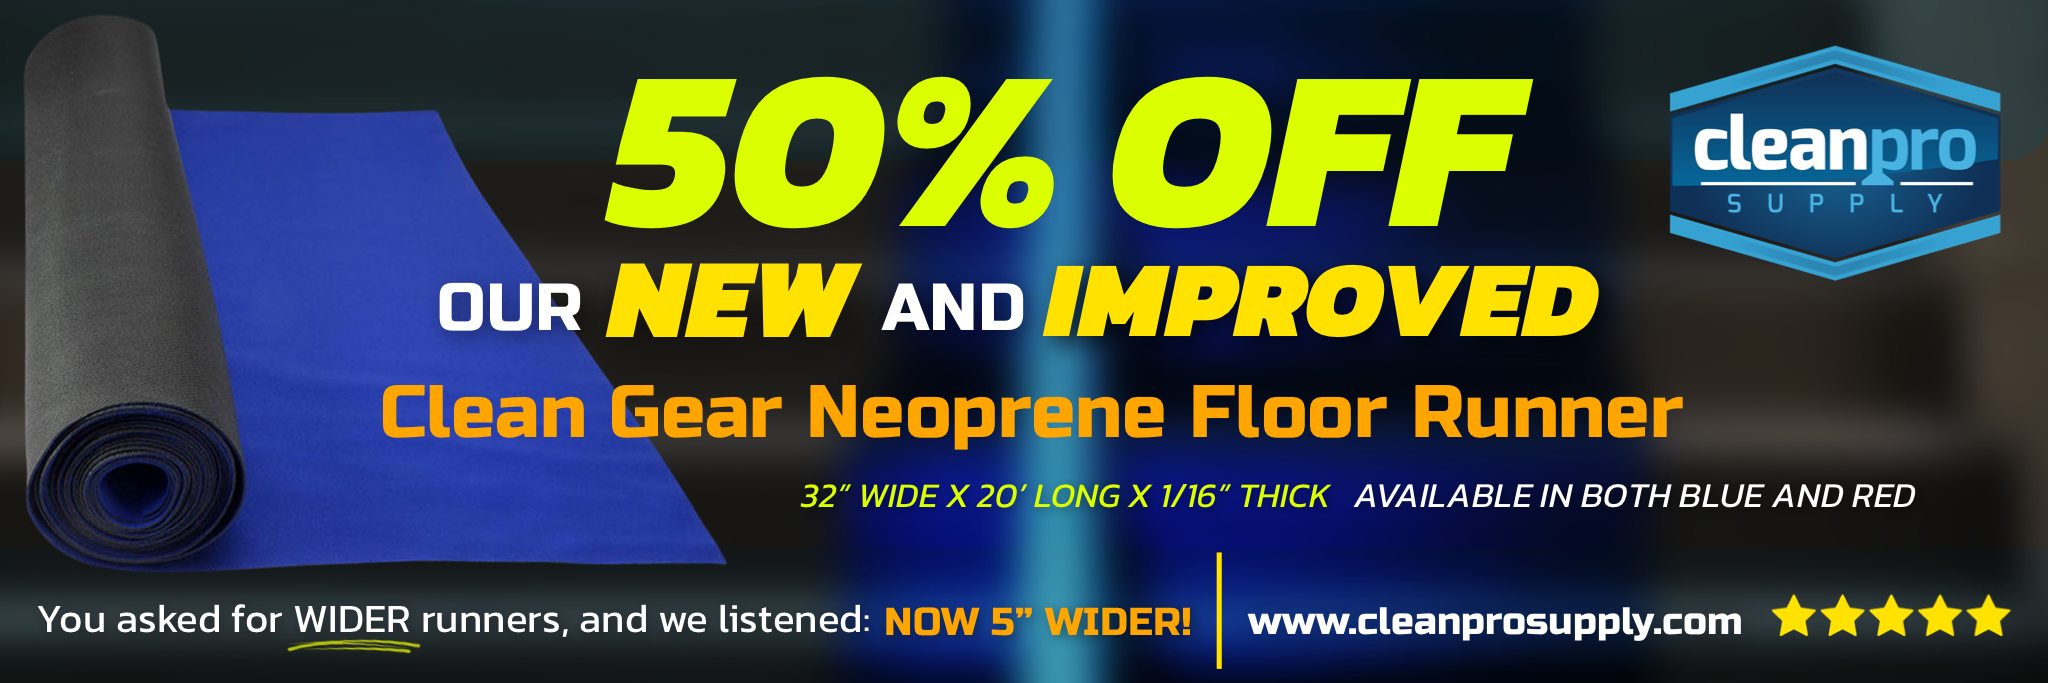 Clean Gear Red Neoprene Floor Runner - 32 x 20' x 1/16